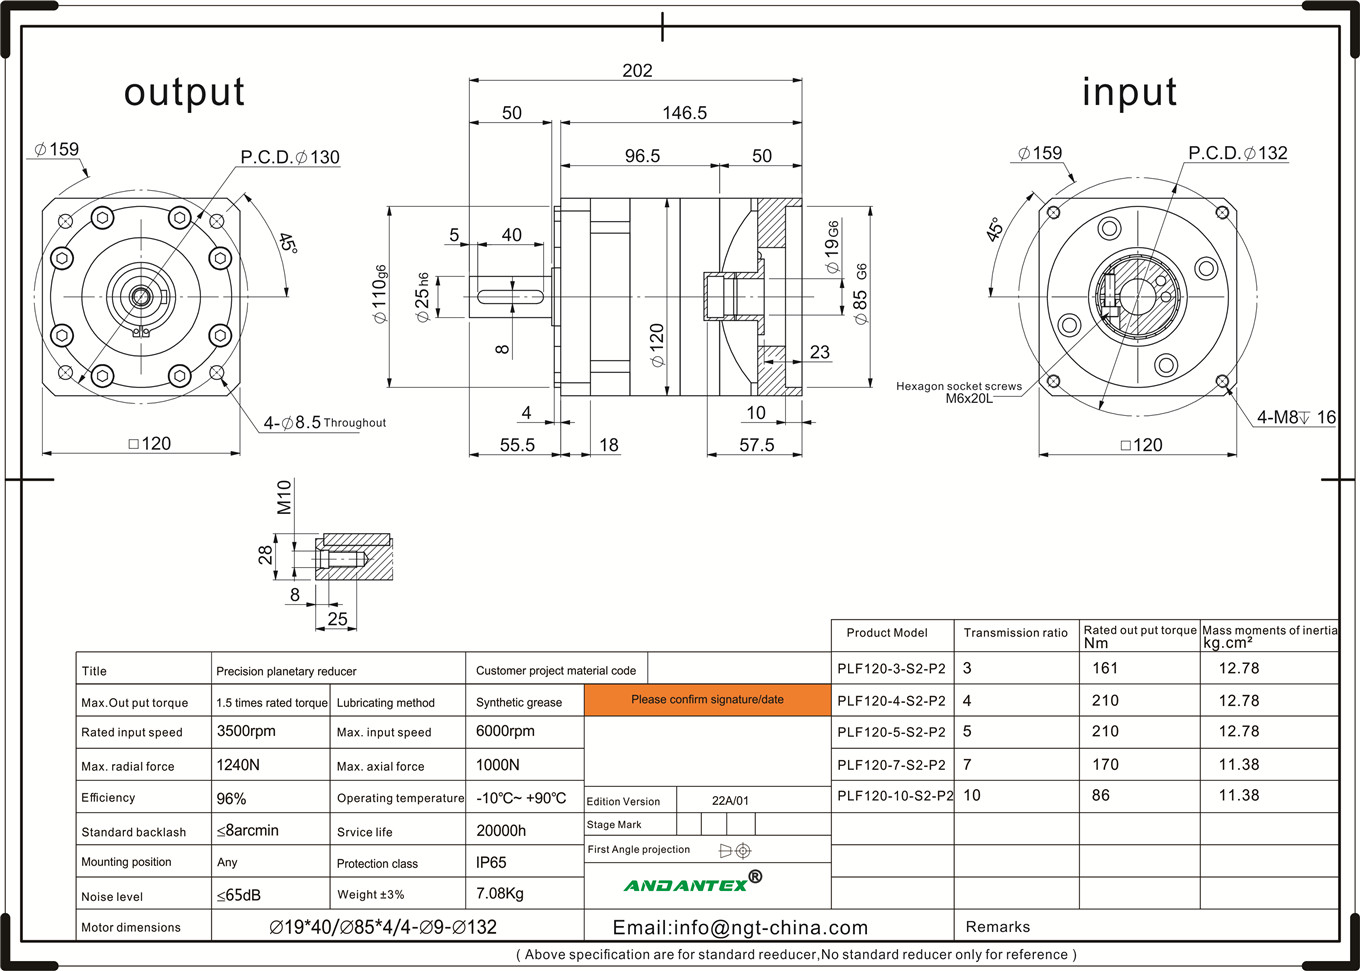 Andantex plf120-10-s2-p2 séri standar kotak gear planét alat mesin dispensing dina aplikasi-01